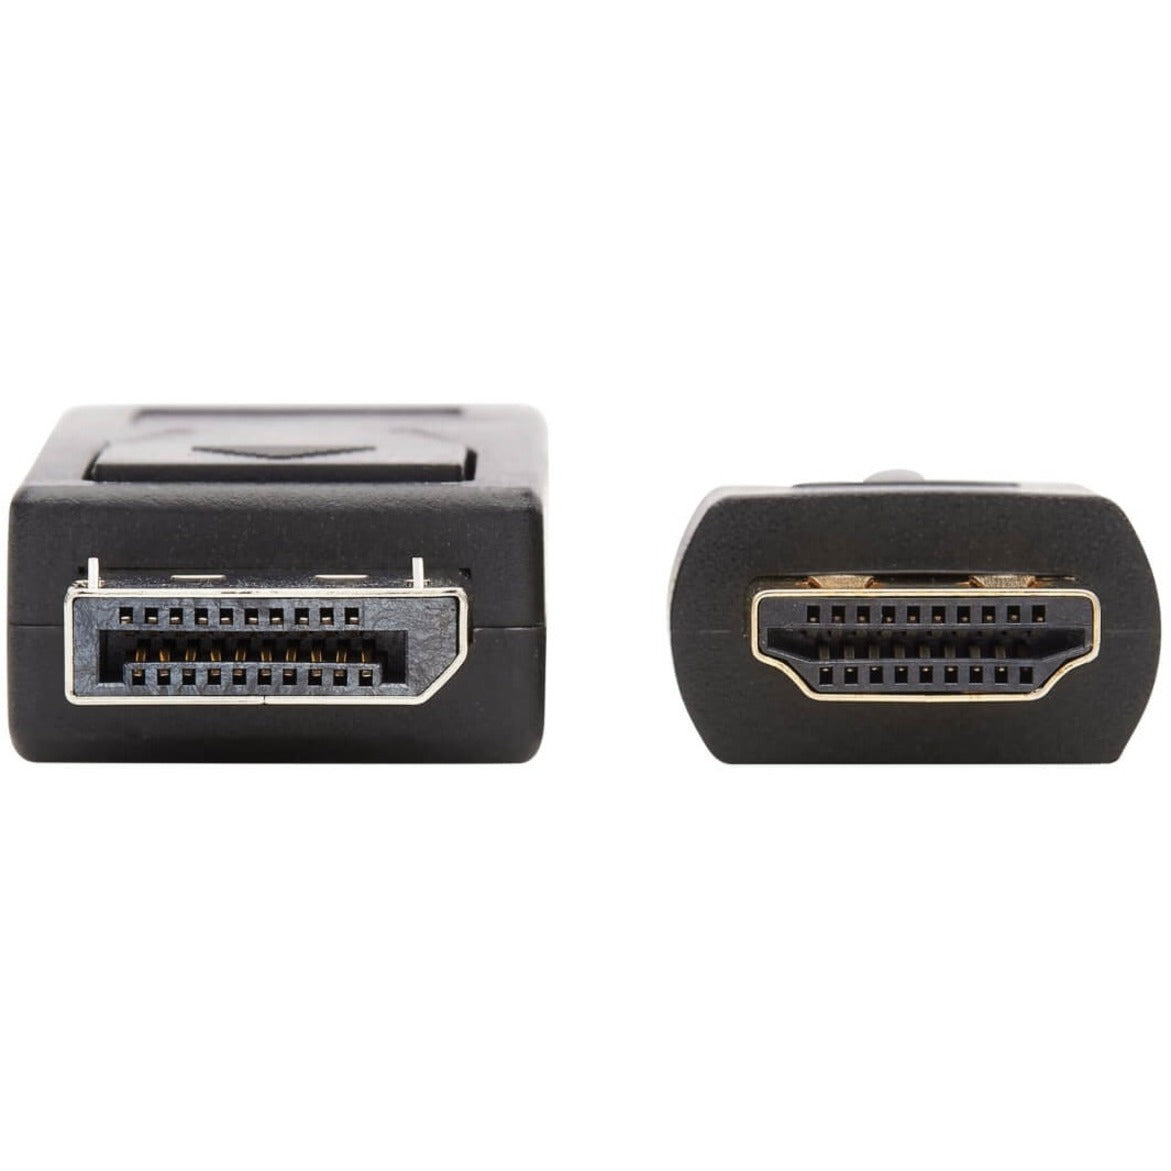 Tripp Lite P582-020-4K6AE DisplayPort to HDMI 4K Cable - M/M, 20 ft., Black, HDCP 2.2, Plug & Play